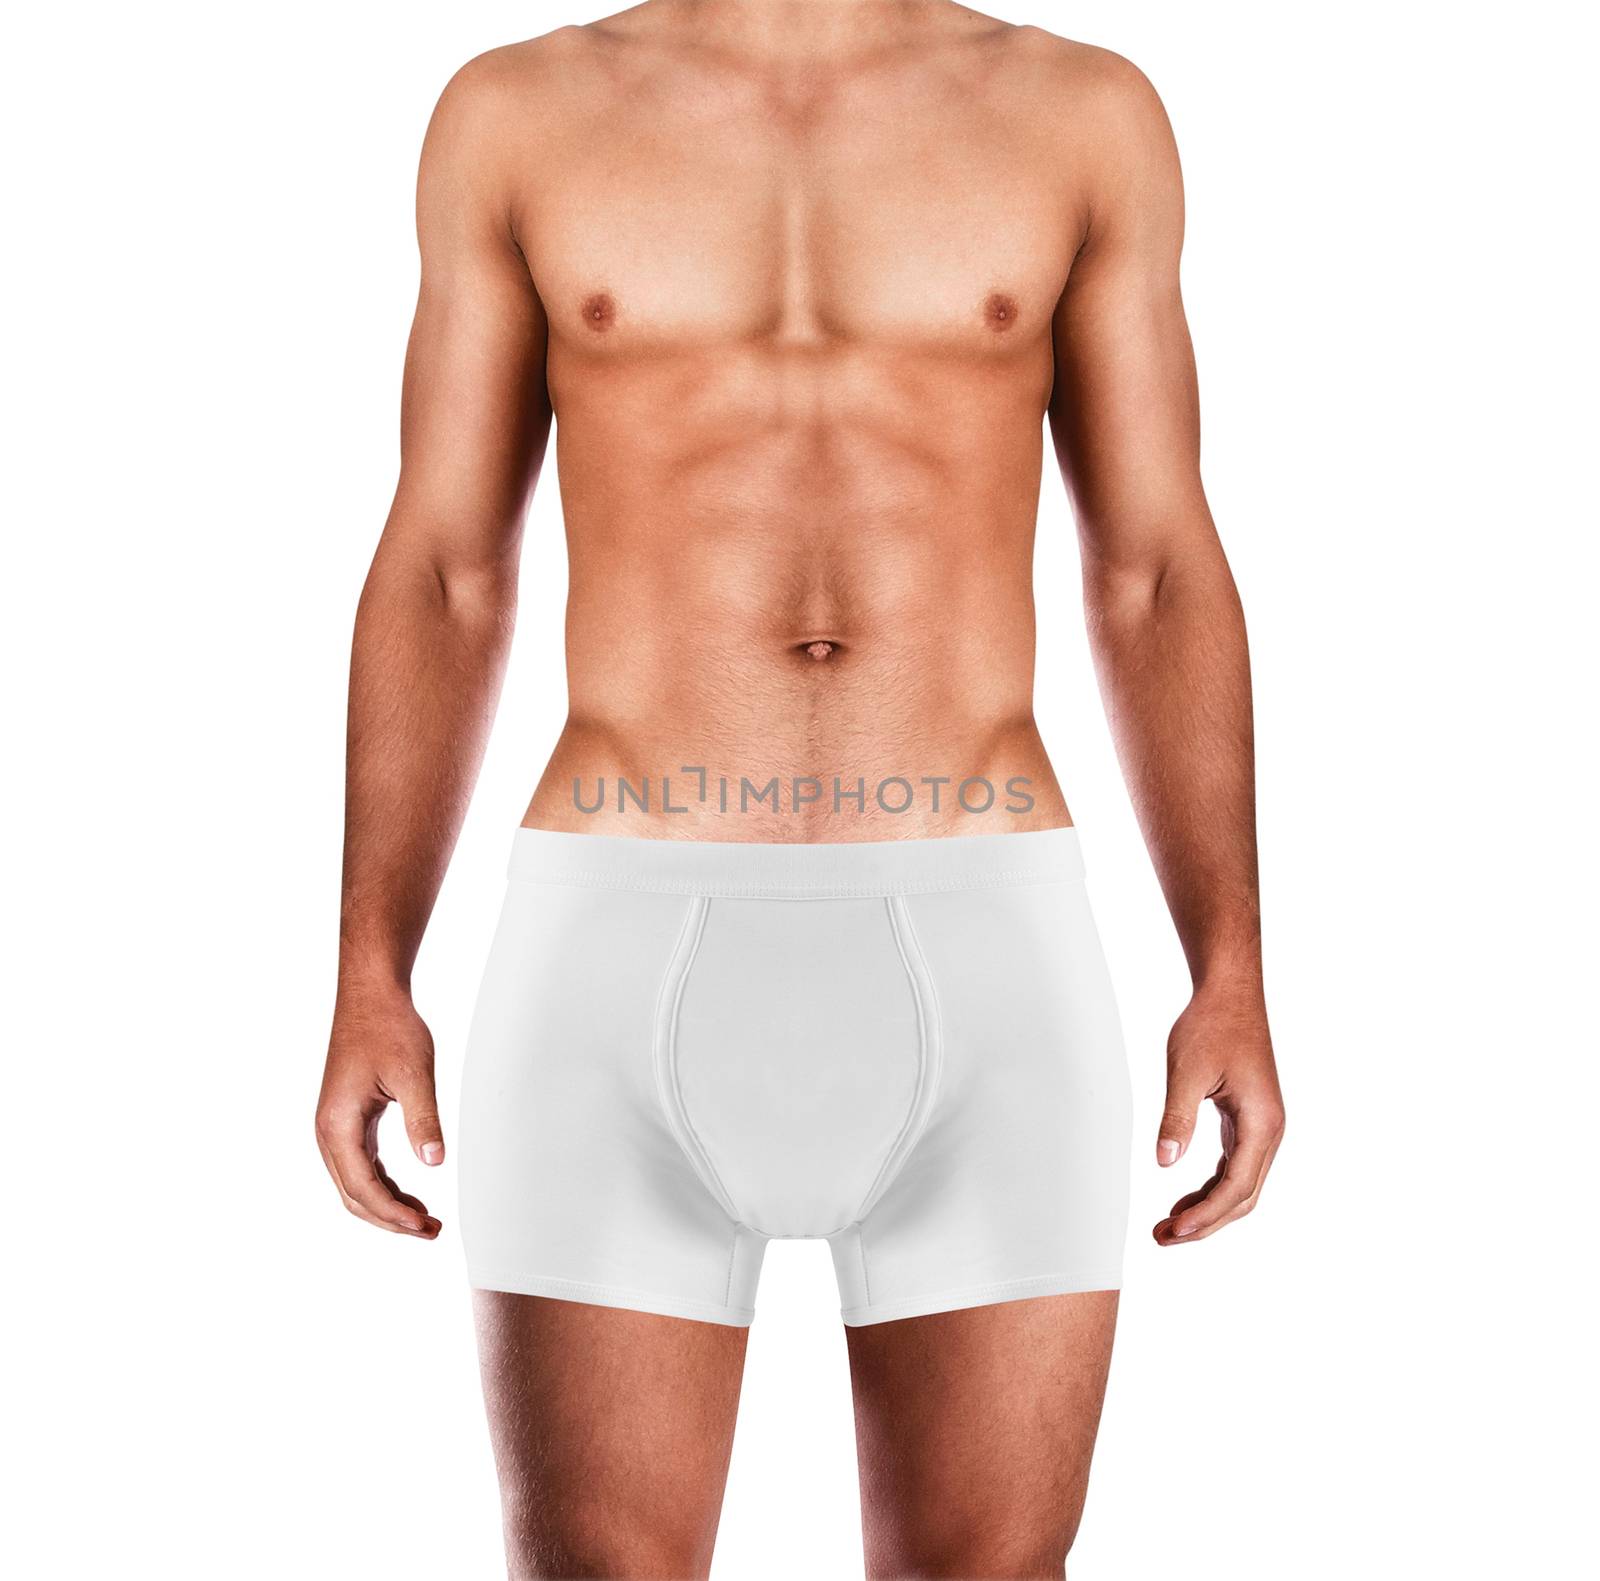 Male sexy underwear model in underpants